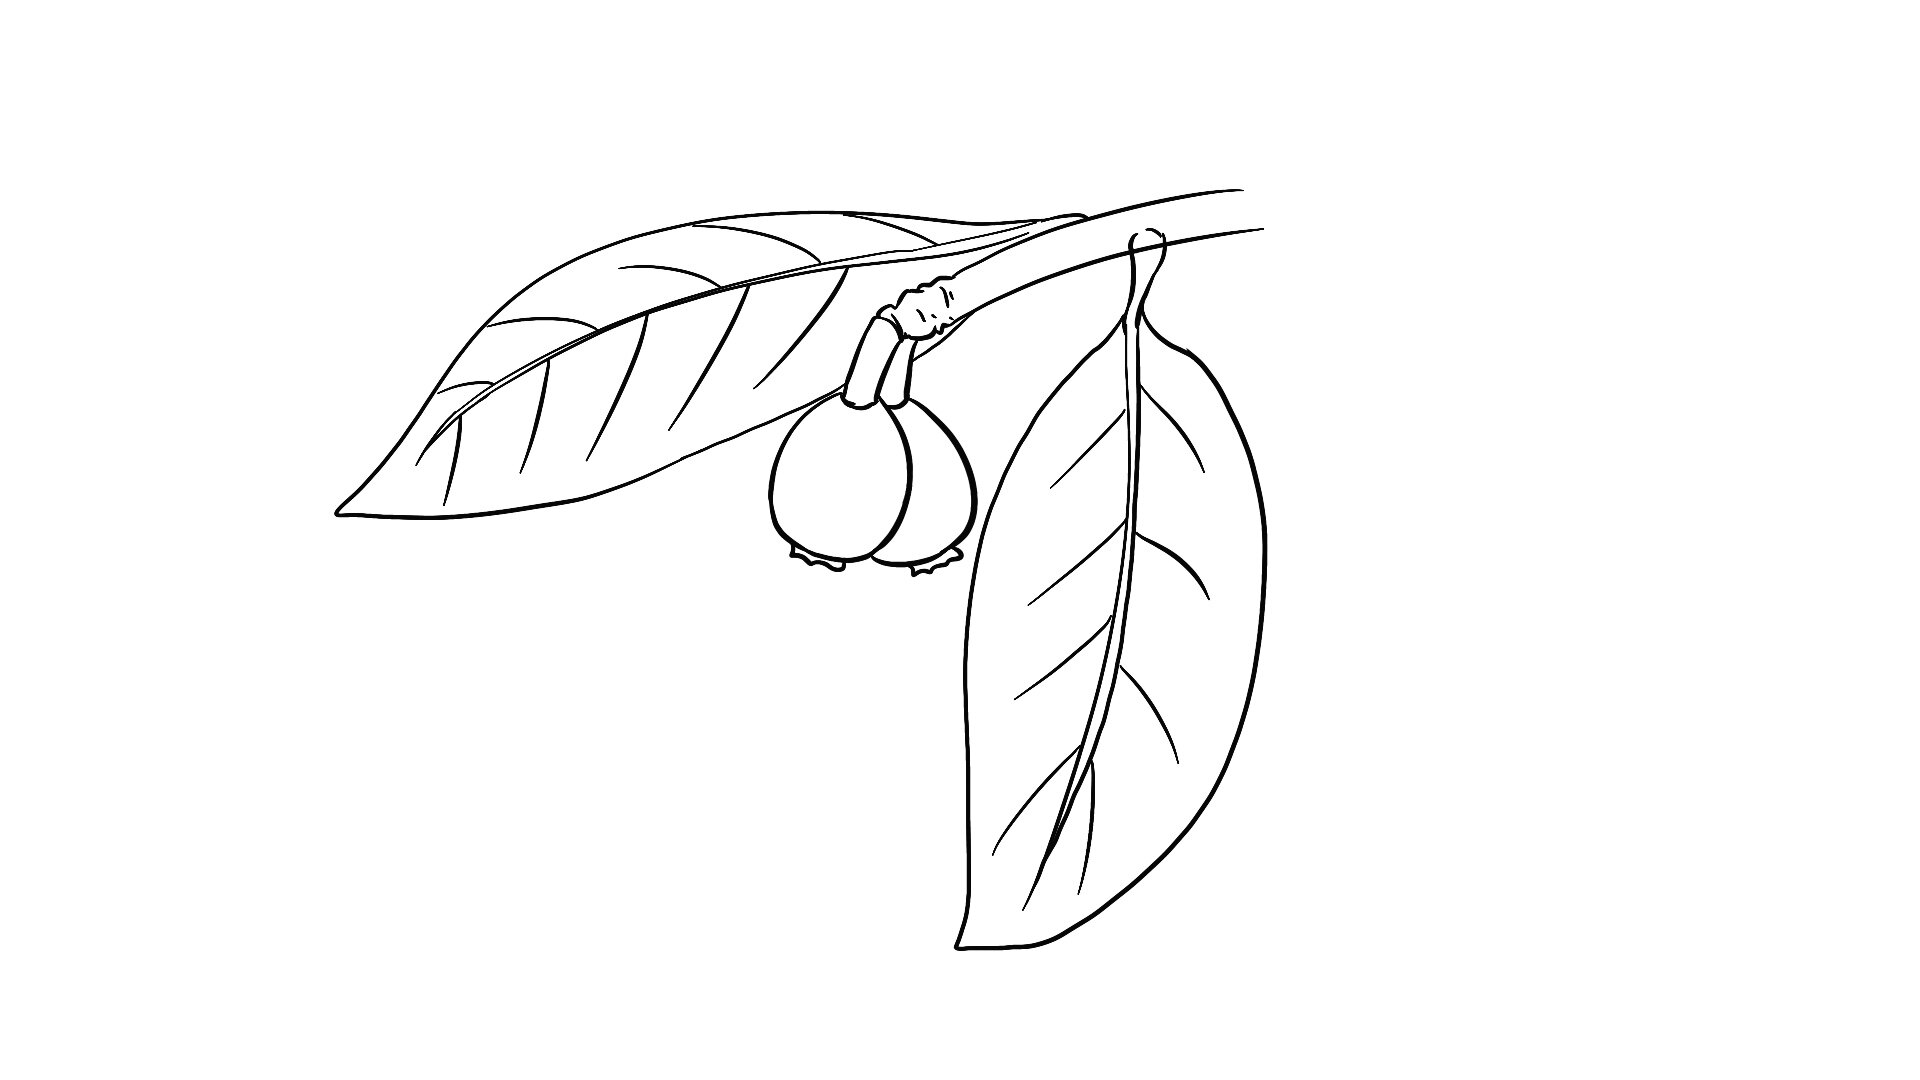 枇杷树的简笔画图片图片